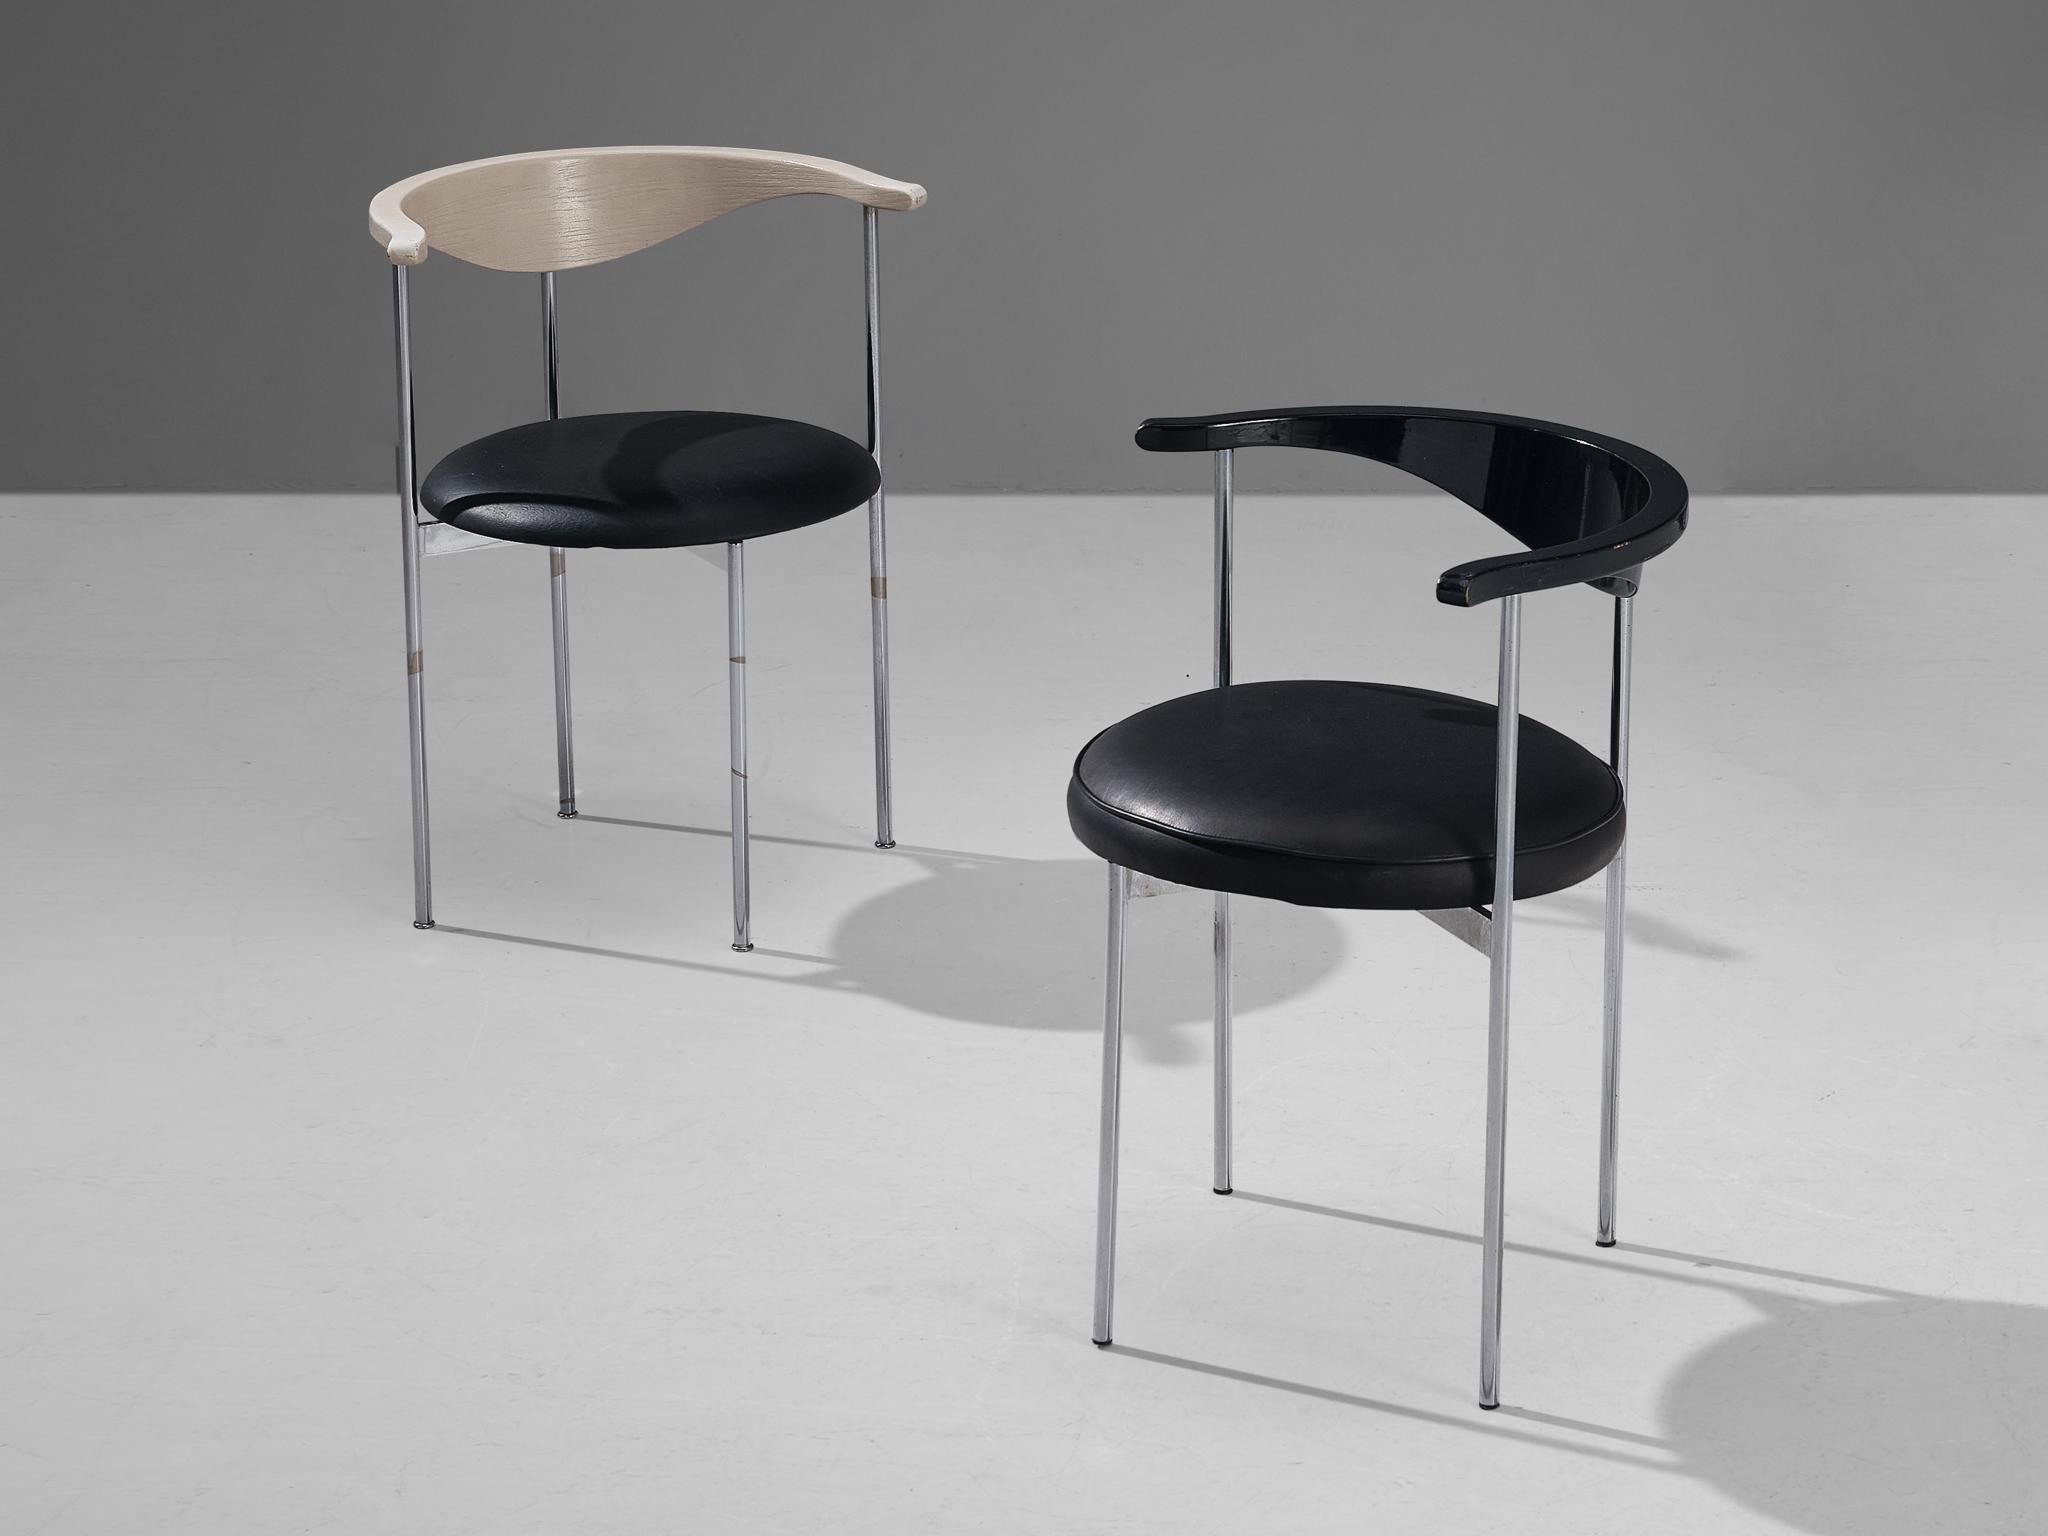 Frederik Sieck pour Fritz Hansen, paire de chaises modèle 3200, skaï, bois peint en noir et blanc, métal, Danemark, design 1962, production 1967. 

Cette paire de chaises industrielles claires du modèle 3200 a été conçue par le designer suédois